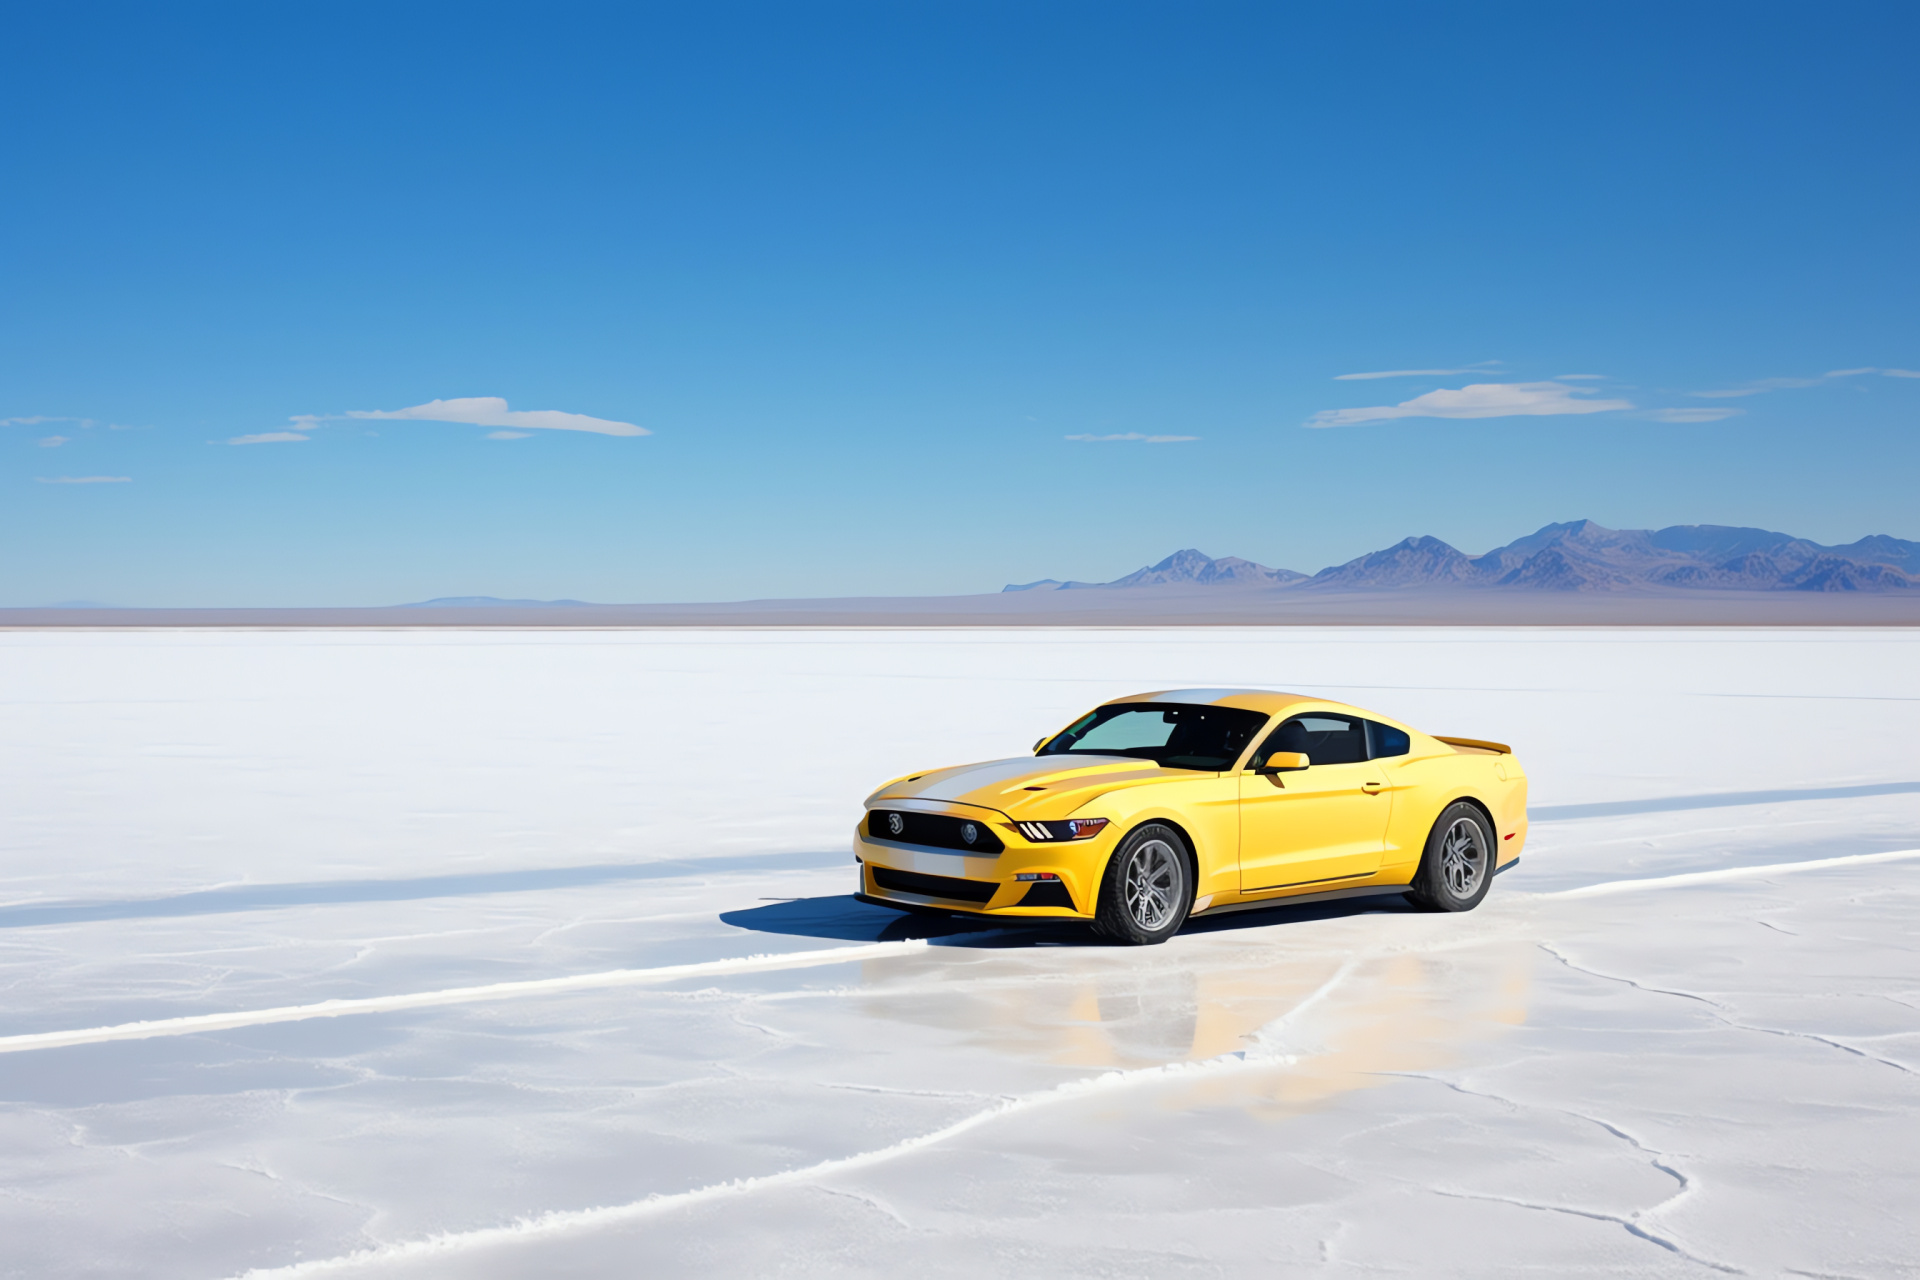 Mustang Mach 1, Bonneville flats, Sky high perspective, Salt pan expanse, Yellow Mustang contrast, HD Desktop Wallpaper